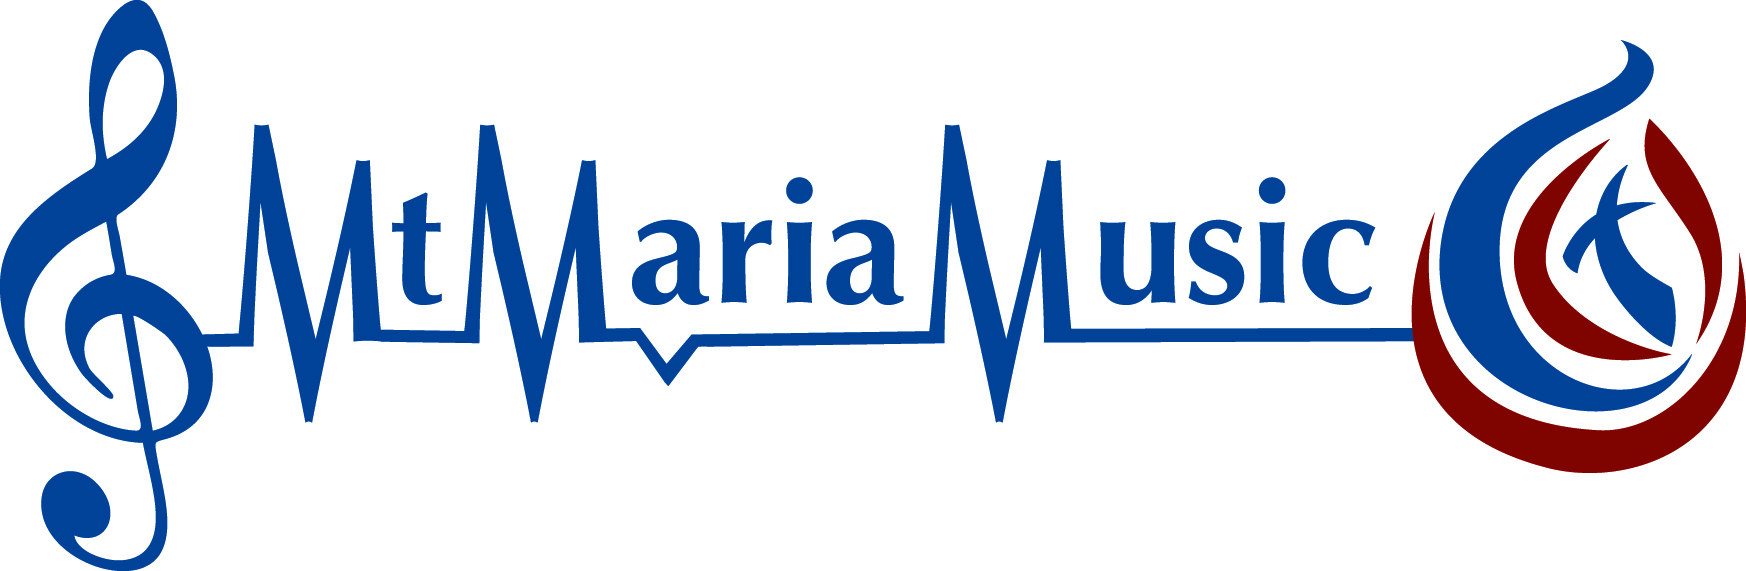 524 Mt Maria Music logo.jpg